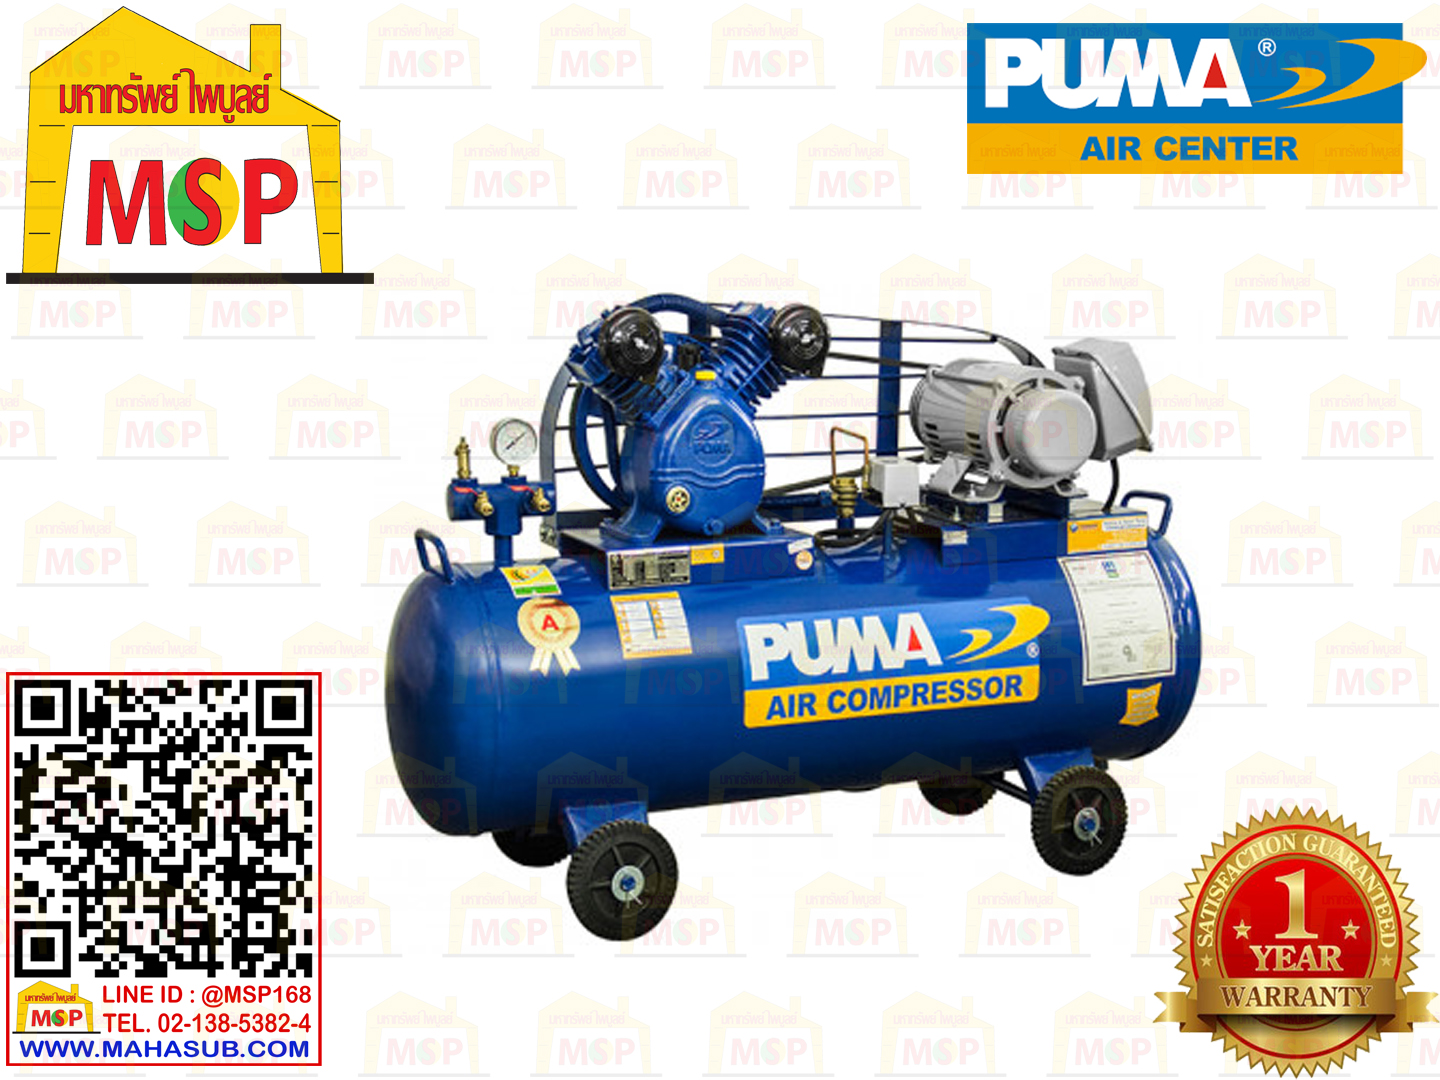 Puma เฉพาะ ถังปั๊มลมพร้อมหัวปั๊ม PP-22 2HP 2ลูกสูบ 148L 8BAR ไม่รวมมอเตอร์